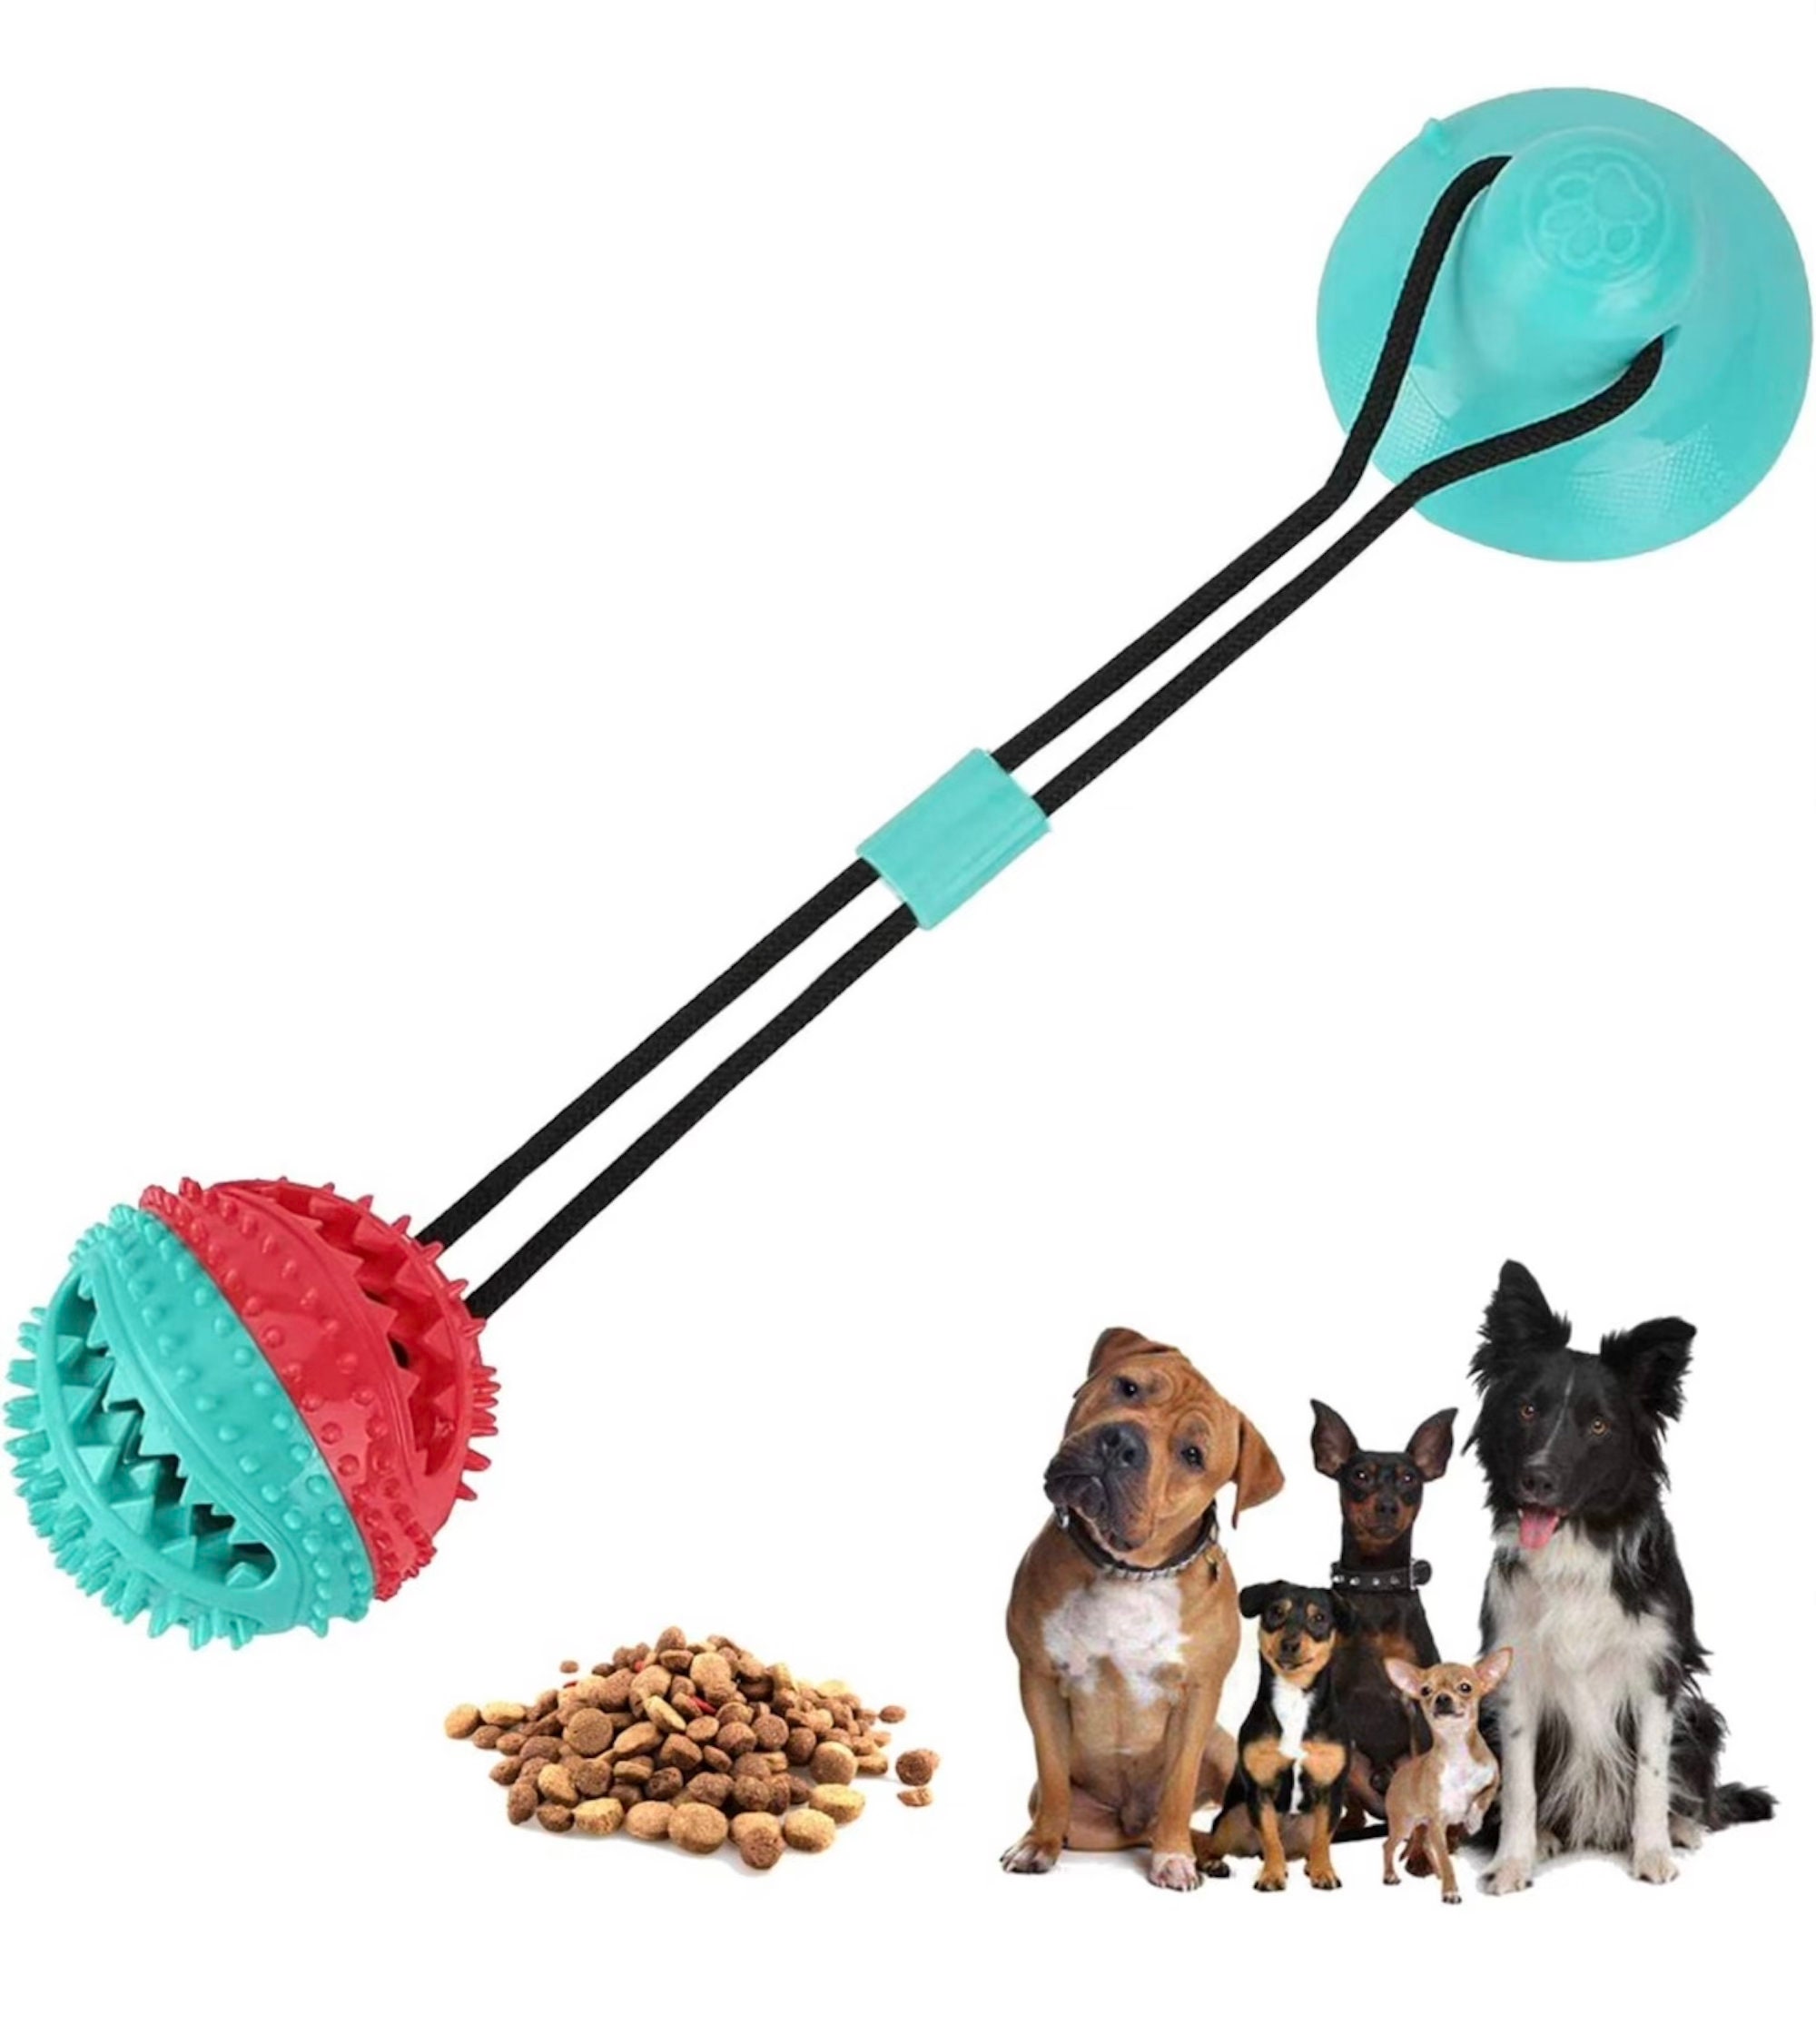 Juguetes para perros para masticadores agresivos, juguetes interactivos  para perros de tira y afloja, juguetes estimulantes mentales para perros